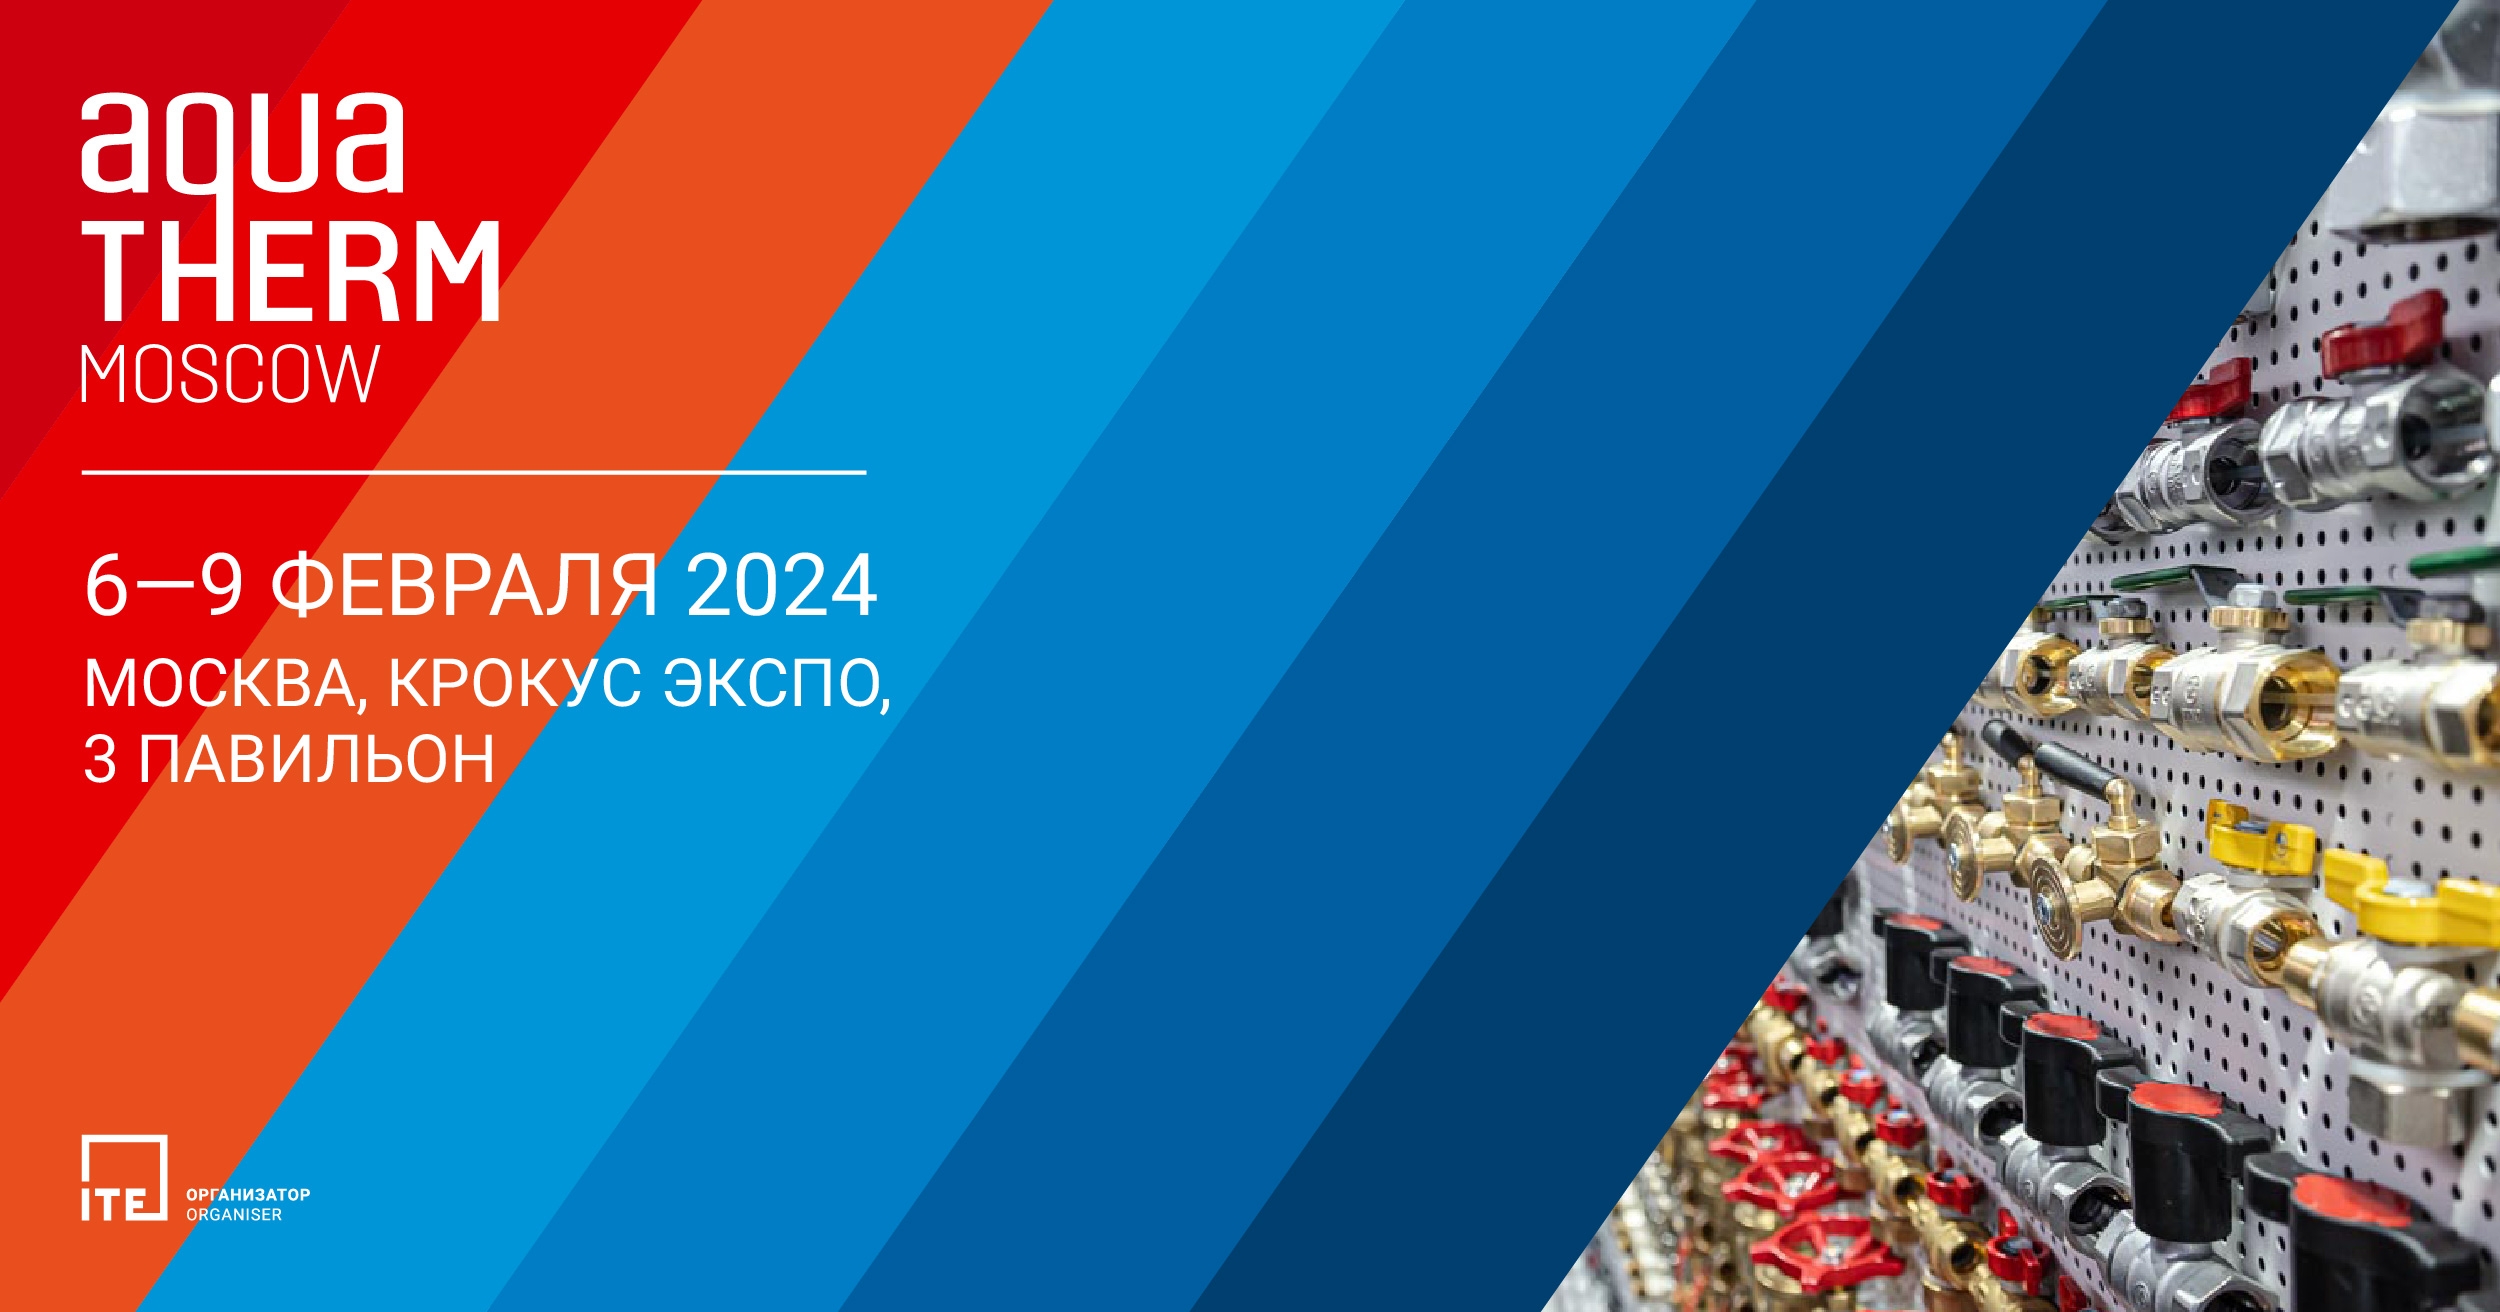 ה-AQUA-THERM MOSCOW ה-28 יתחיל ב-6-9 בפברואר, 2024 במוסקבה, רוסיה